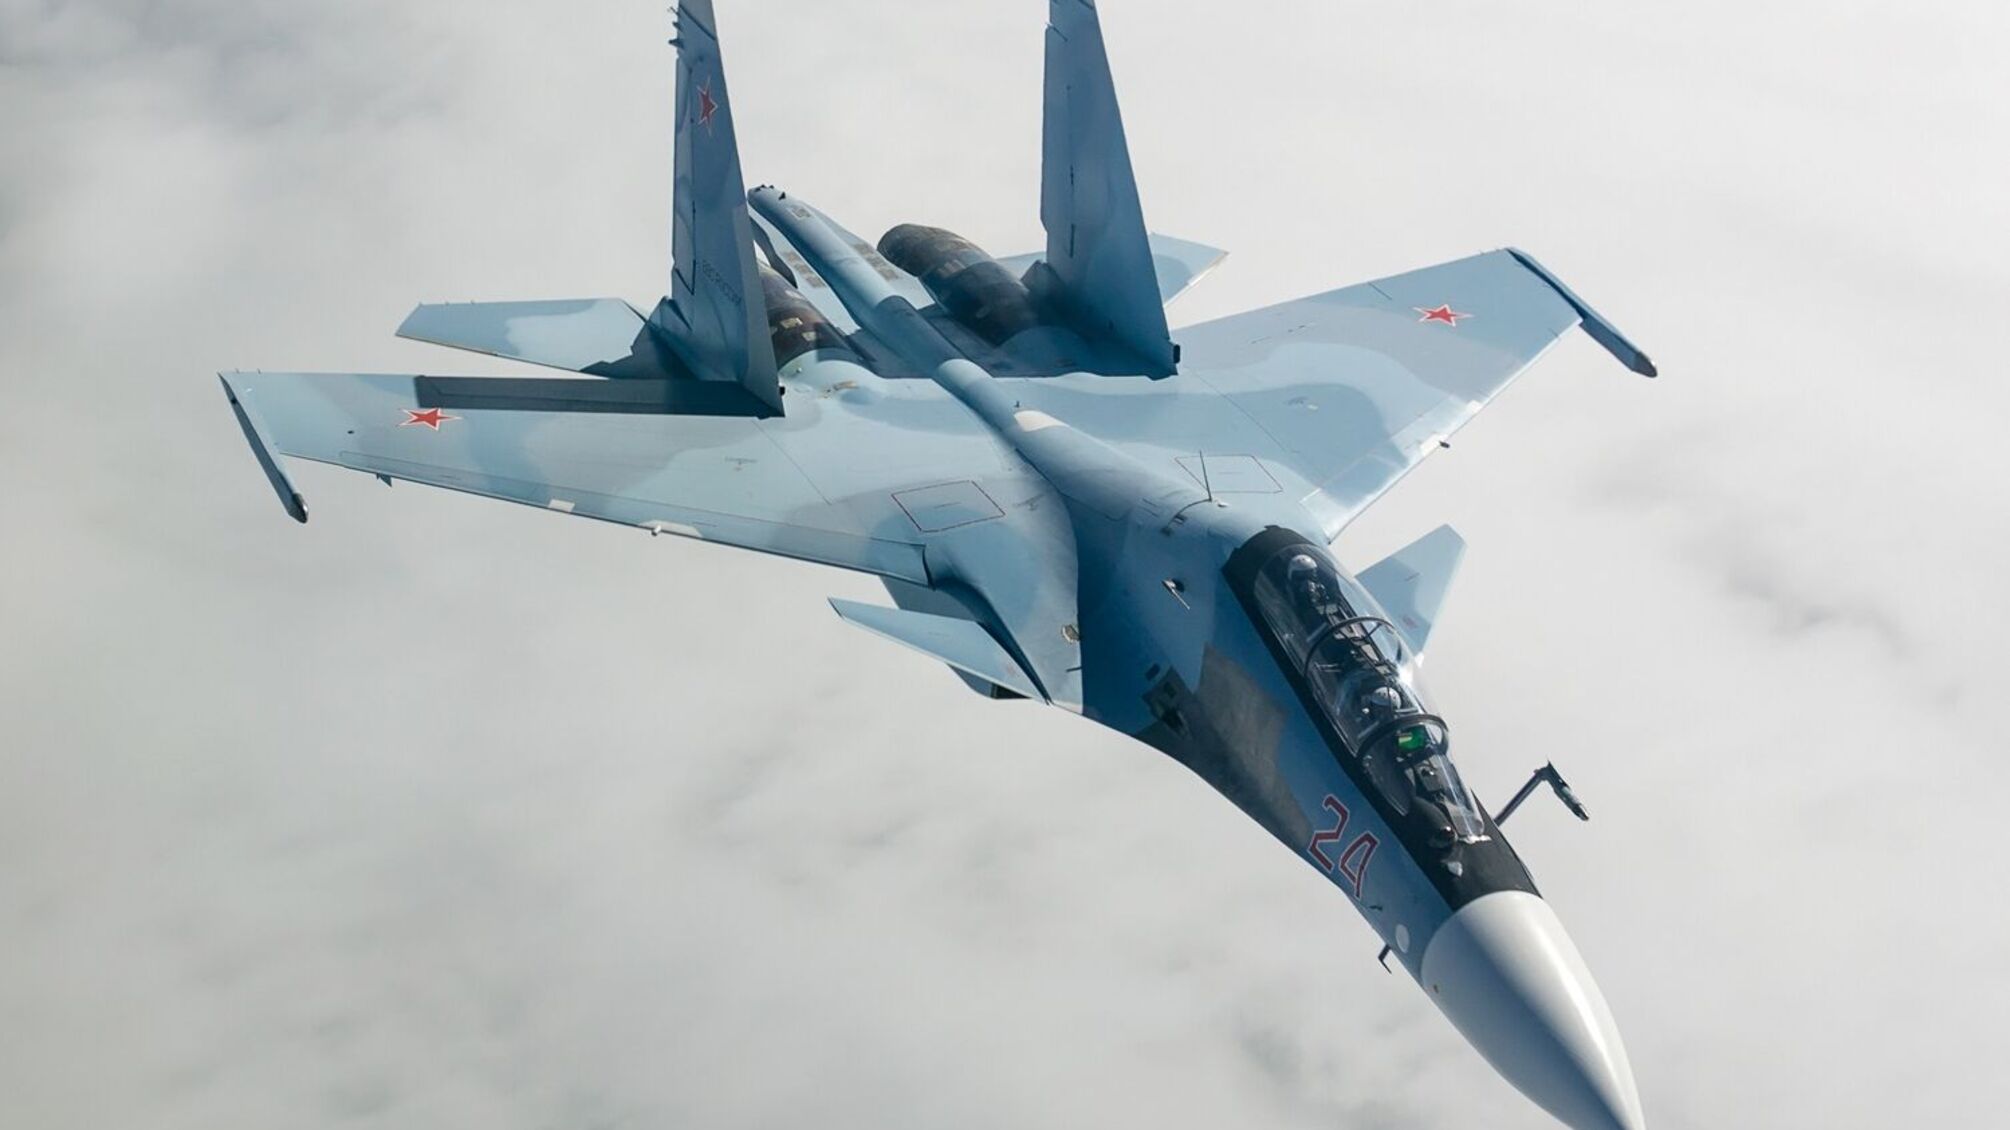 Российский истребитель Су-30